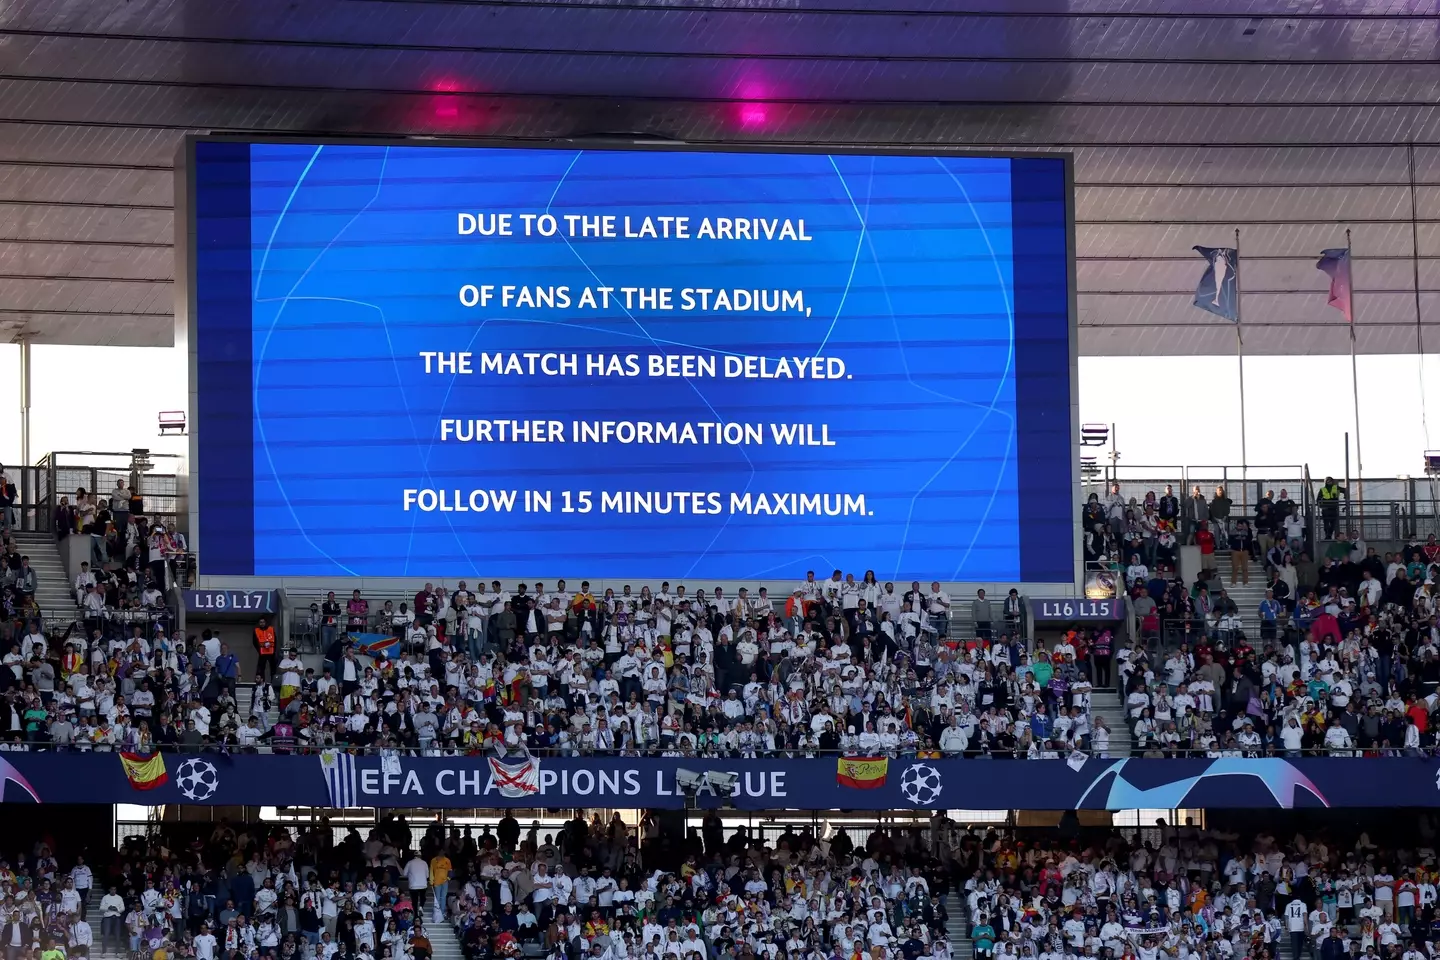 Signs inside the Stade de France blamed fans. Image: Alamy